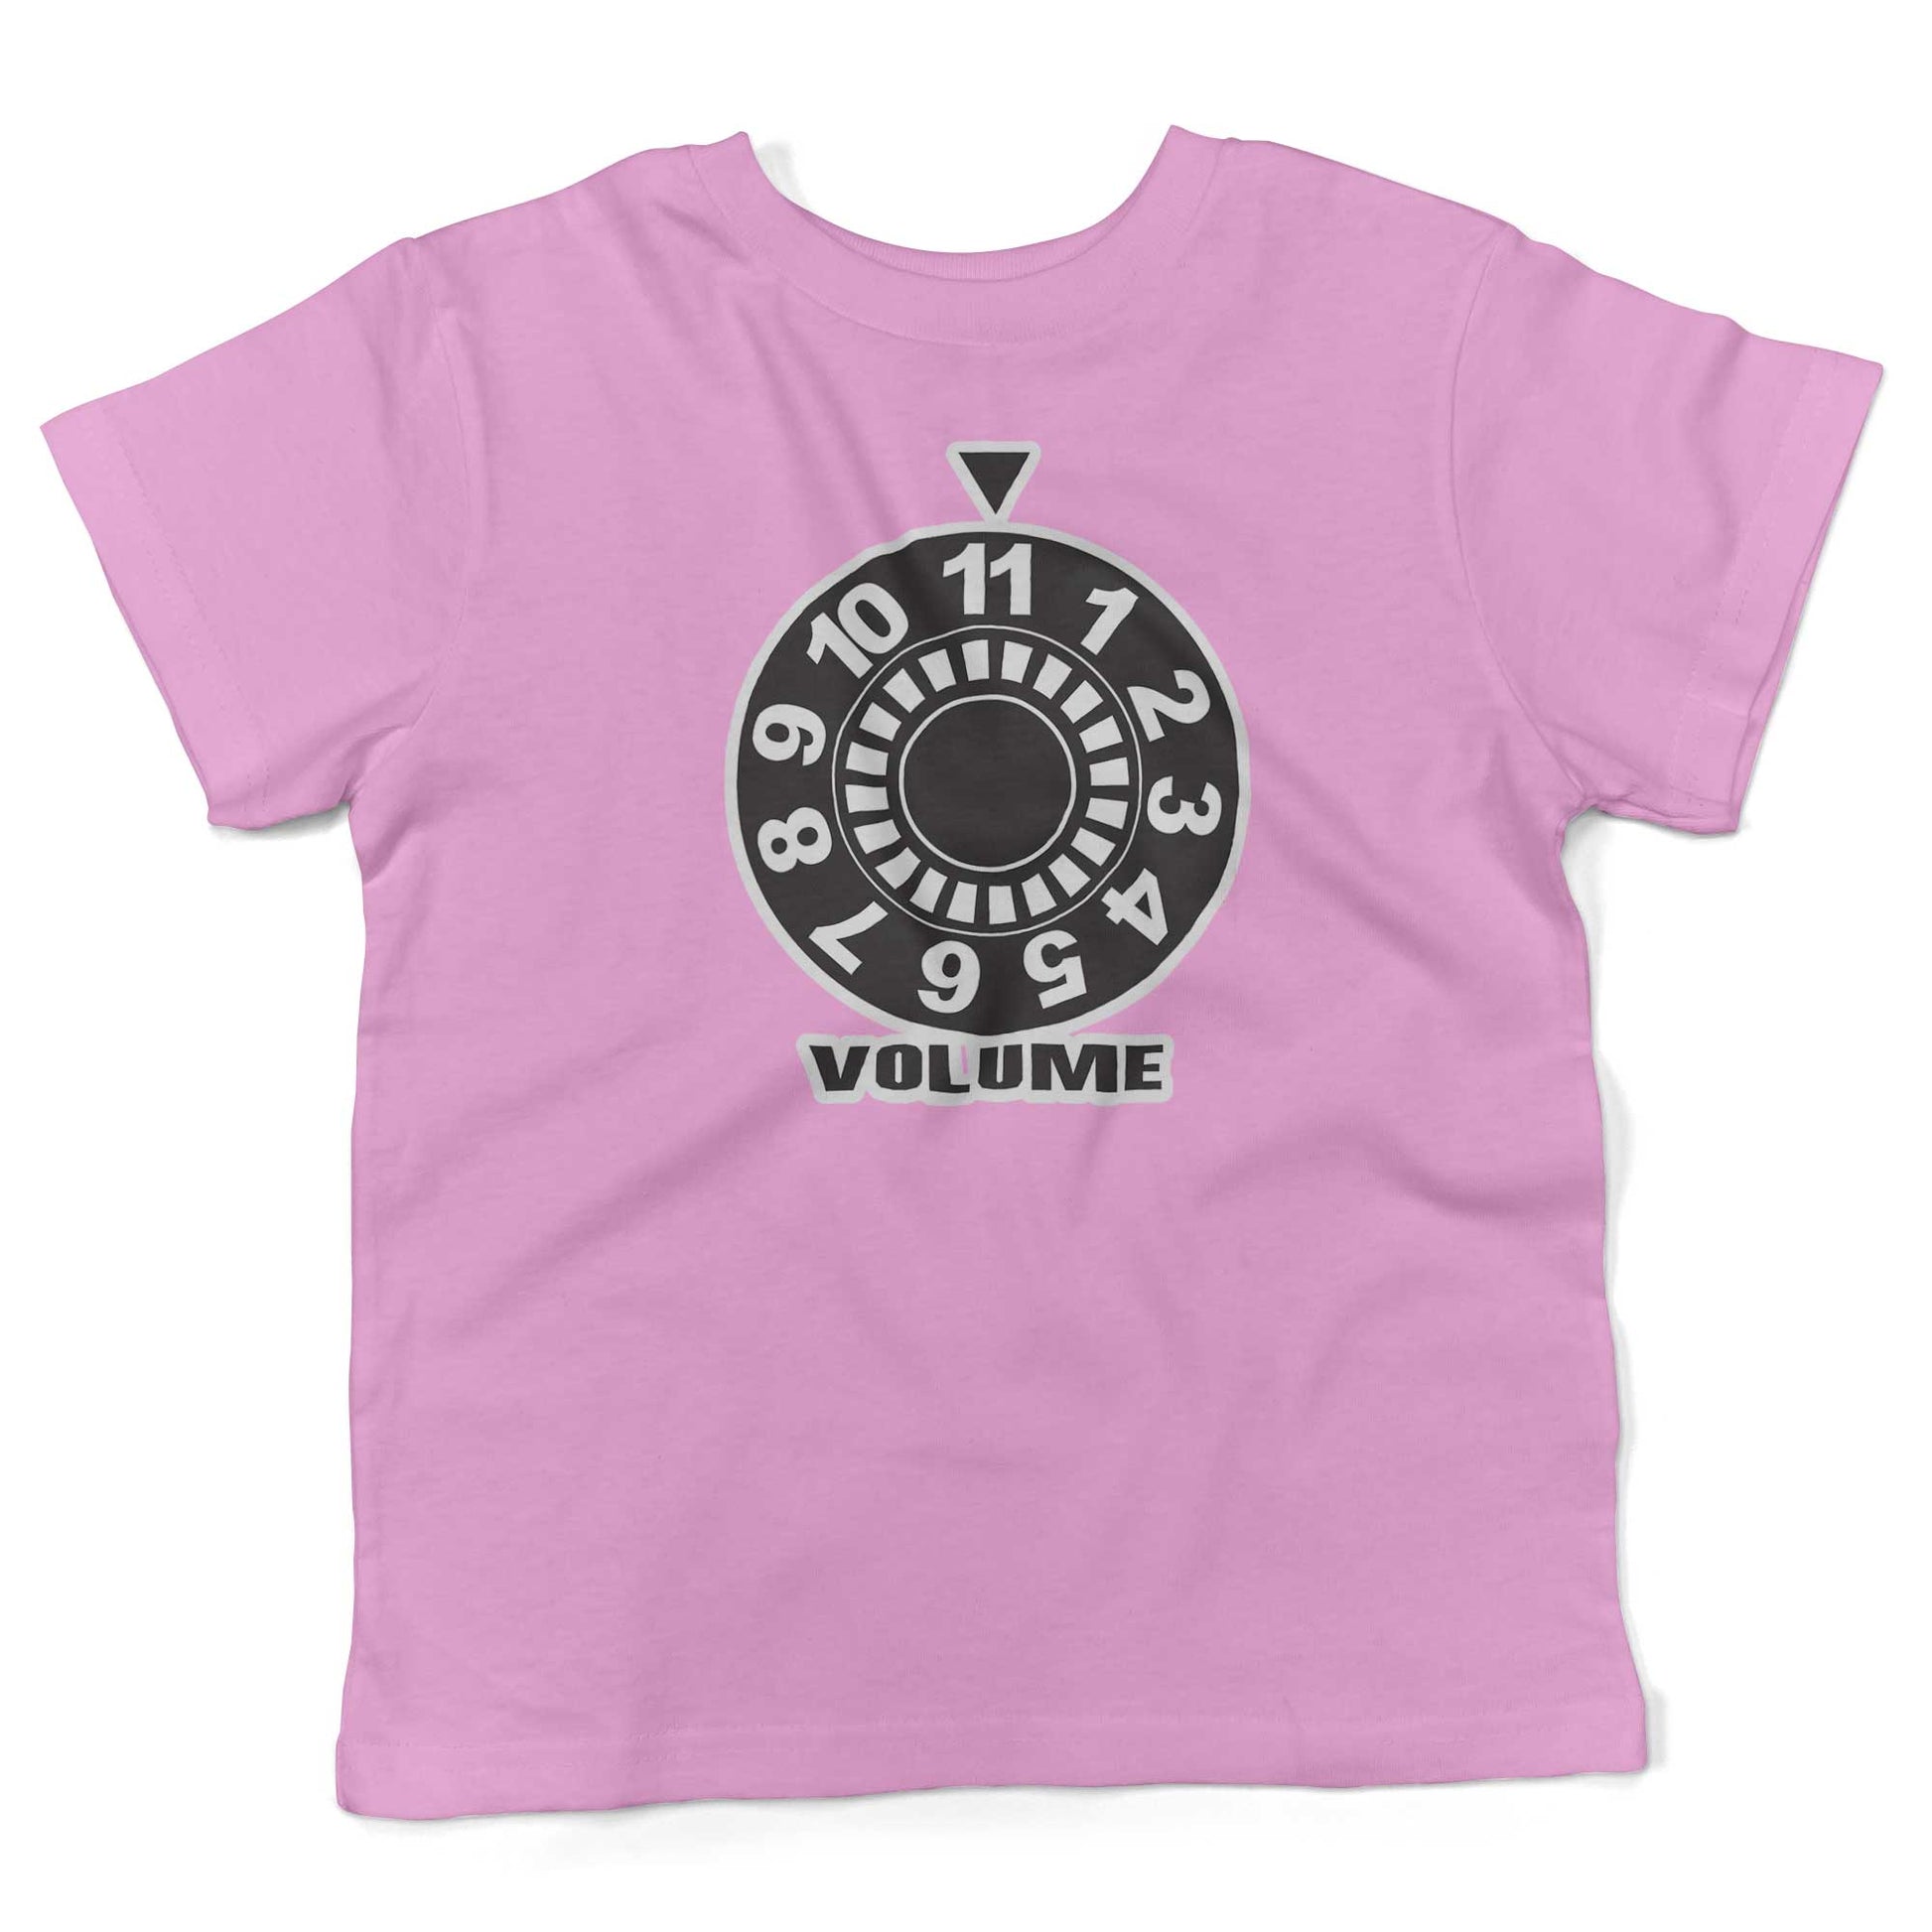 Turn It Up To 11 Toddler Shirt-Organic Pink-2T